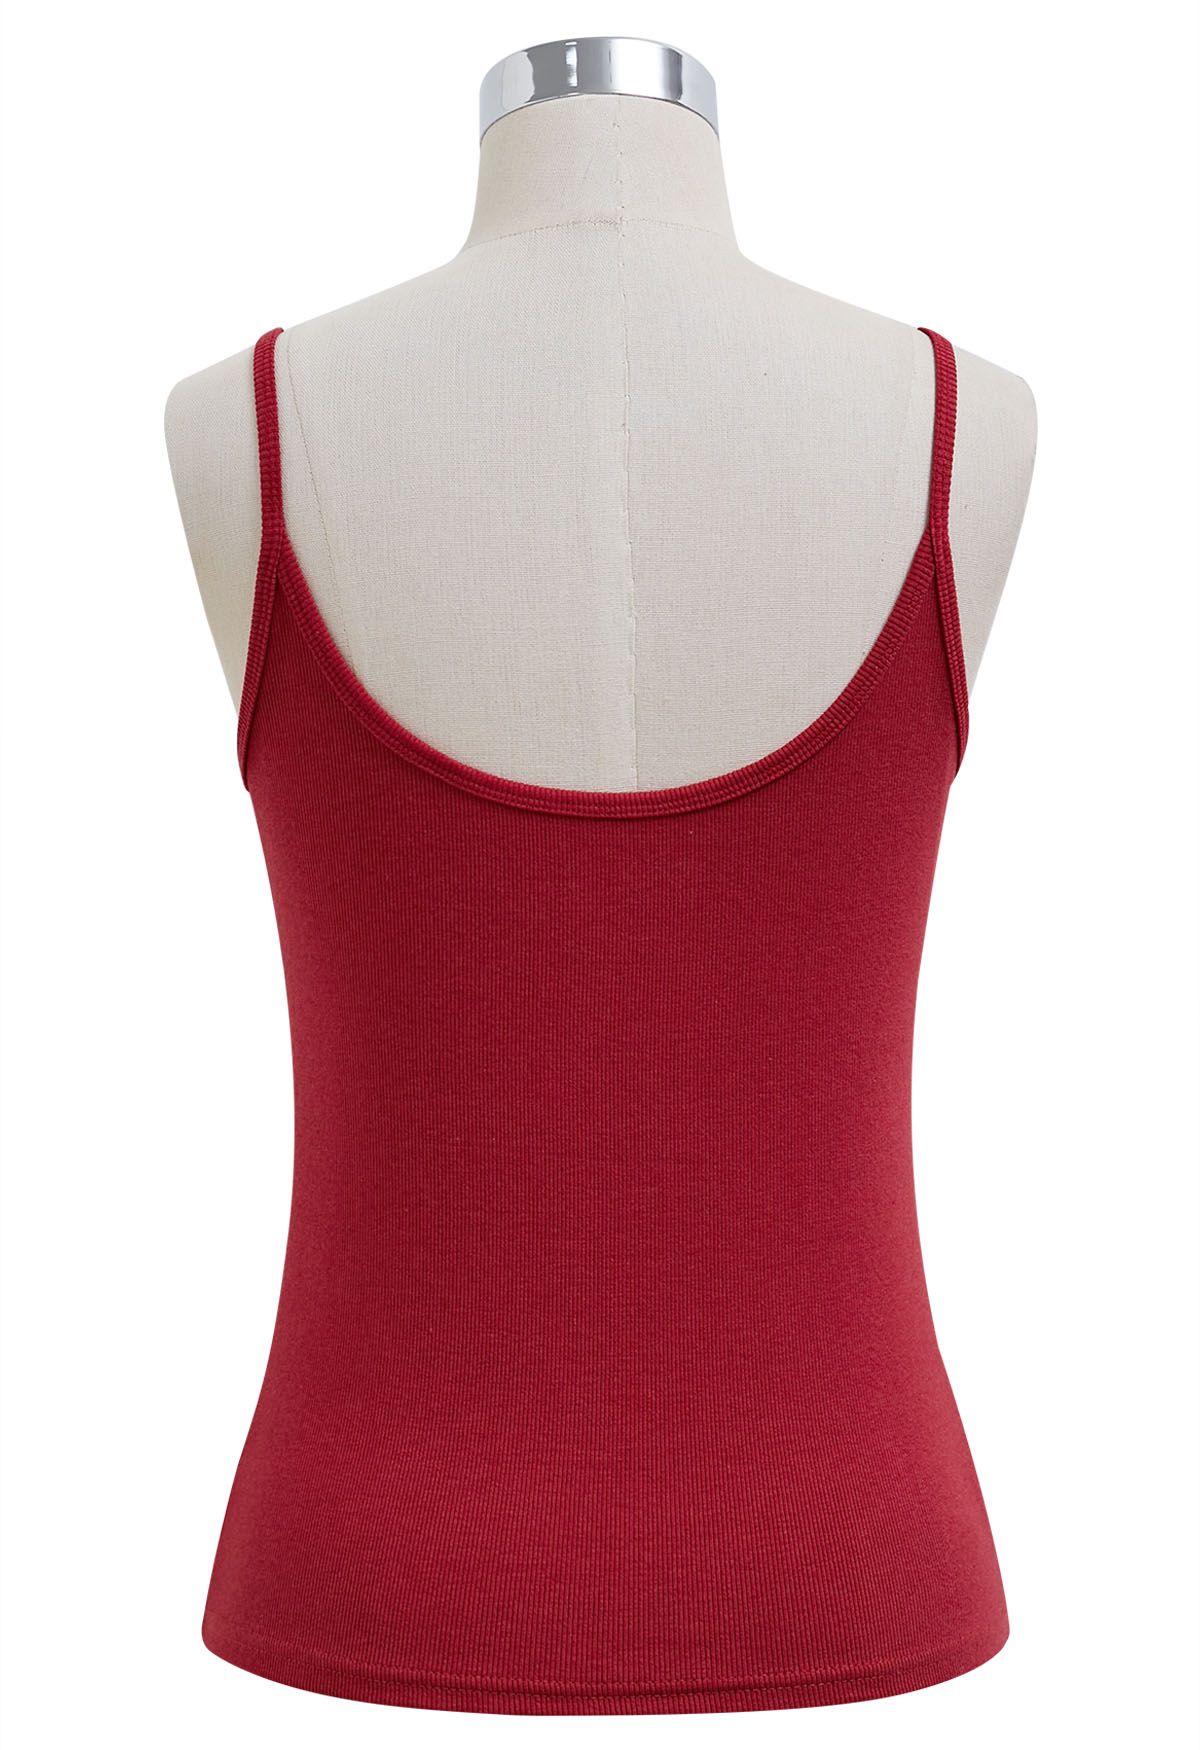 Simplicity – Camisole-Oberteil mit Knopfleiste vorn in Rot